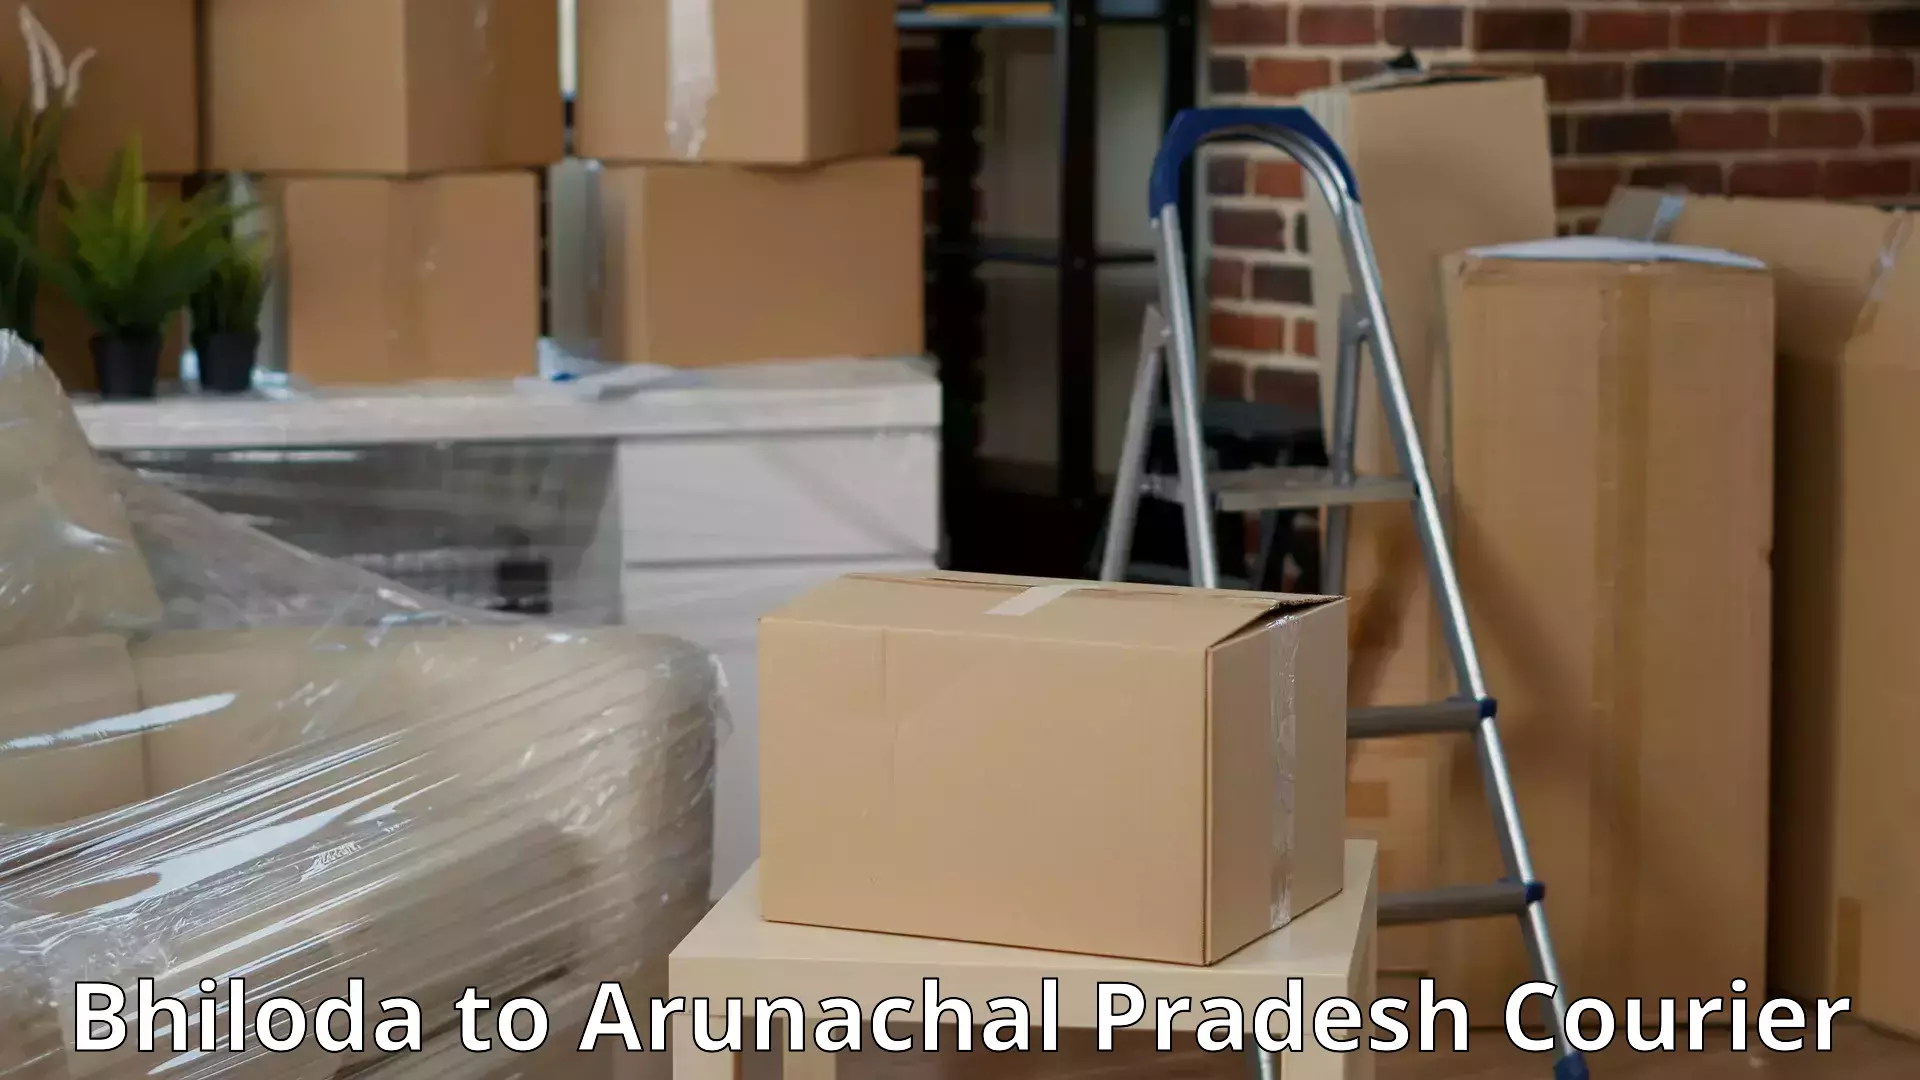 Expert goods movers Bhiloda to Arunachal Pradesh